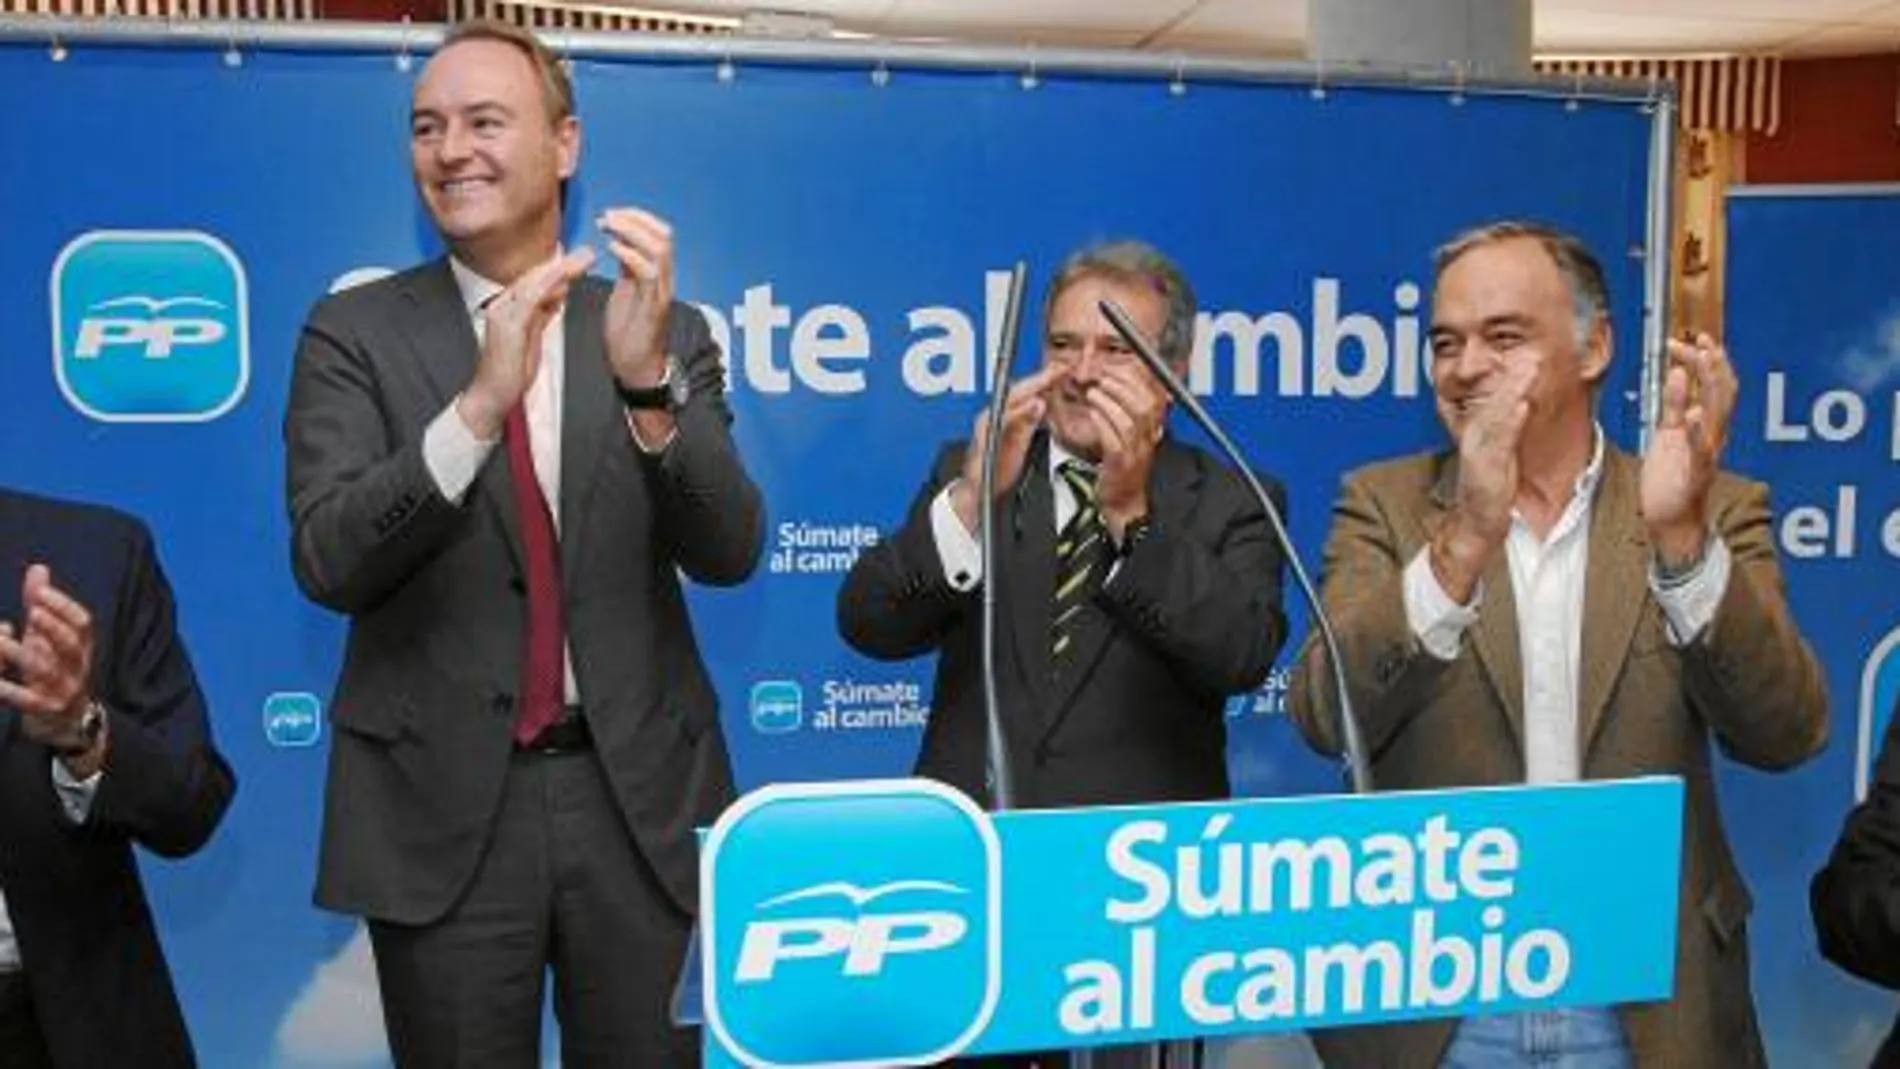 El presidente de la Generalitat, Alberto Fabra, durante un mitin ayer en Lliria. Junto a él, Esteban González Pons, Alfonso Rus y Antonio Clemente